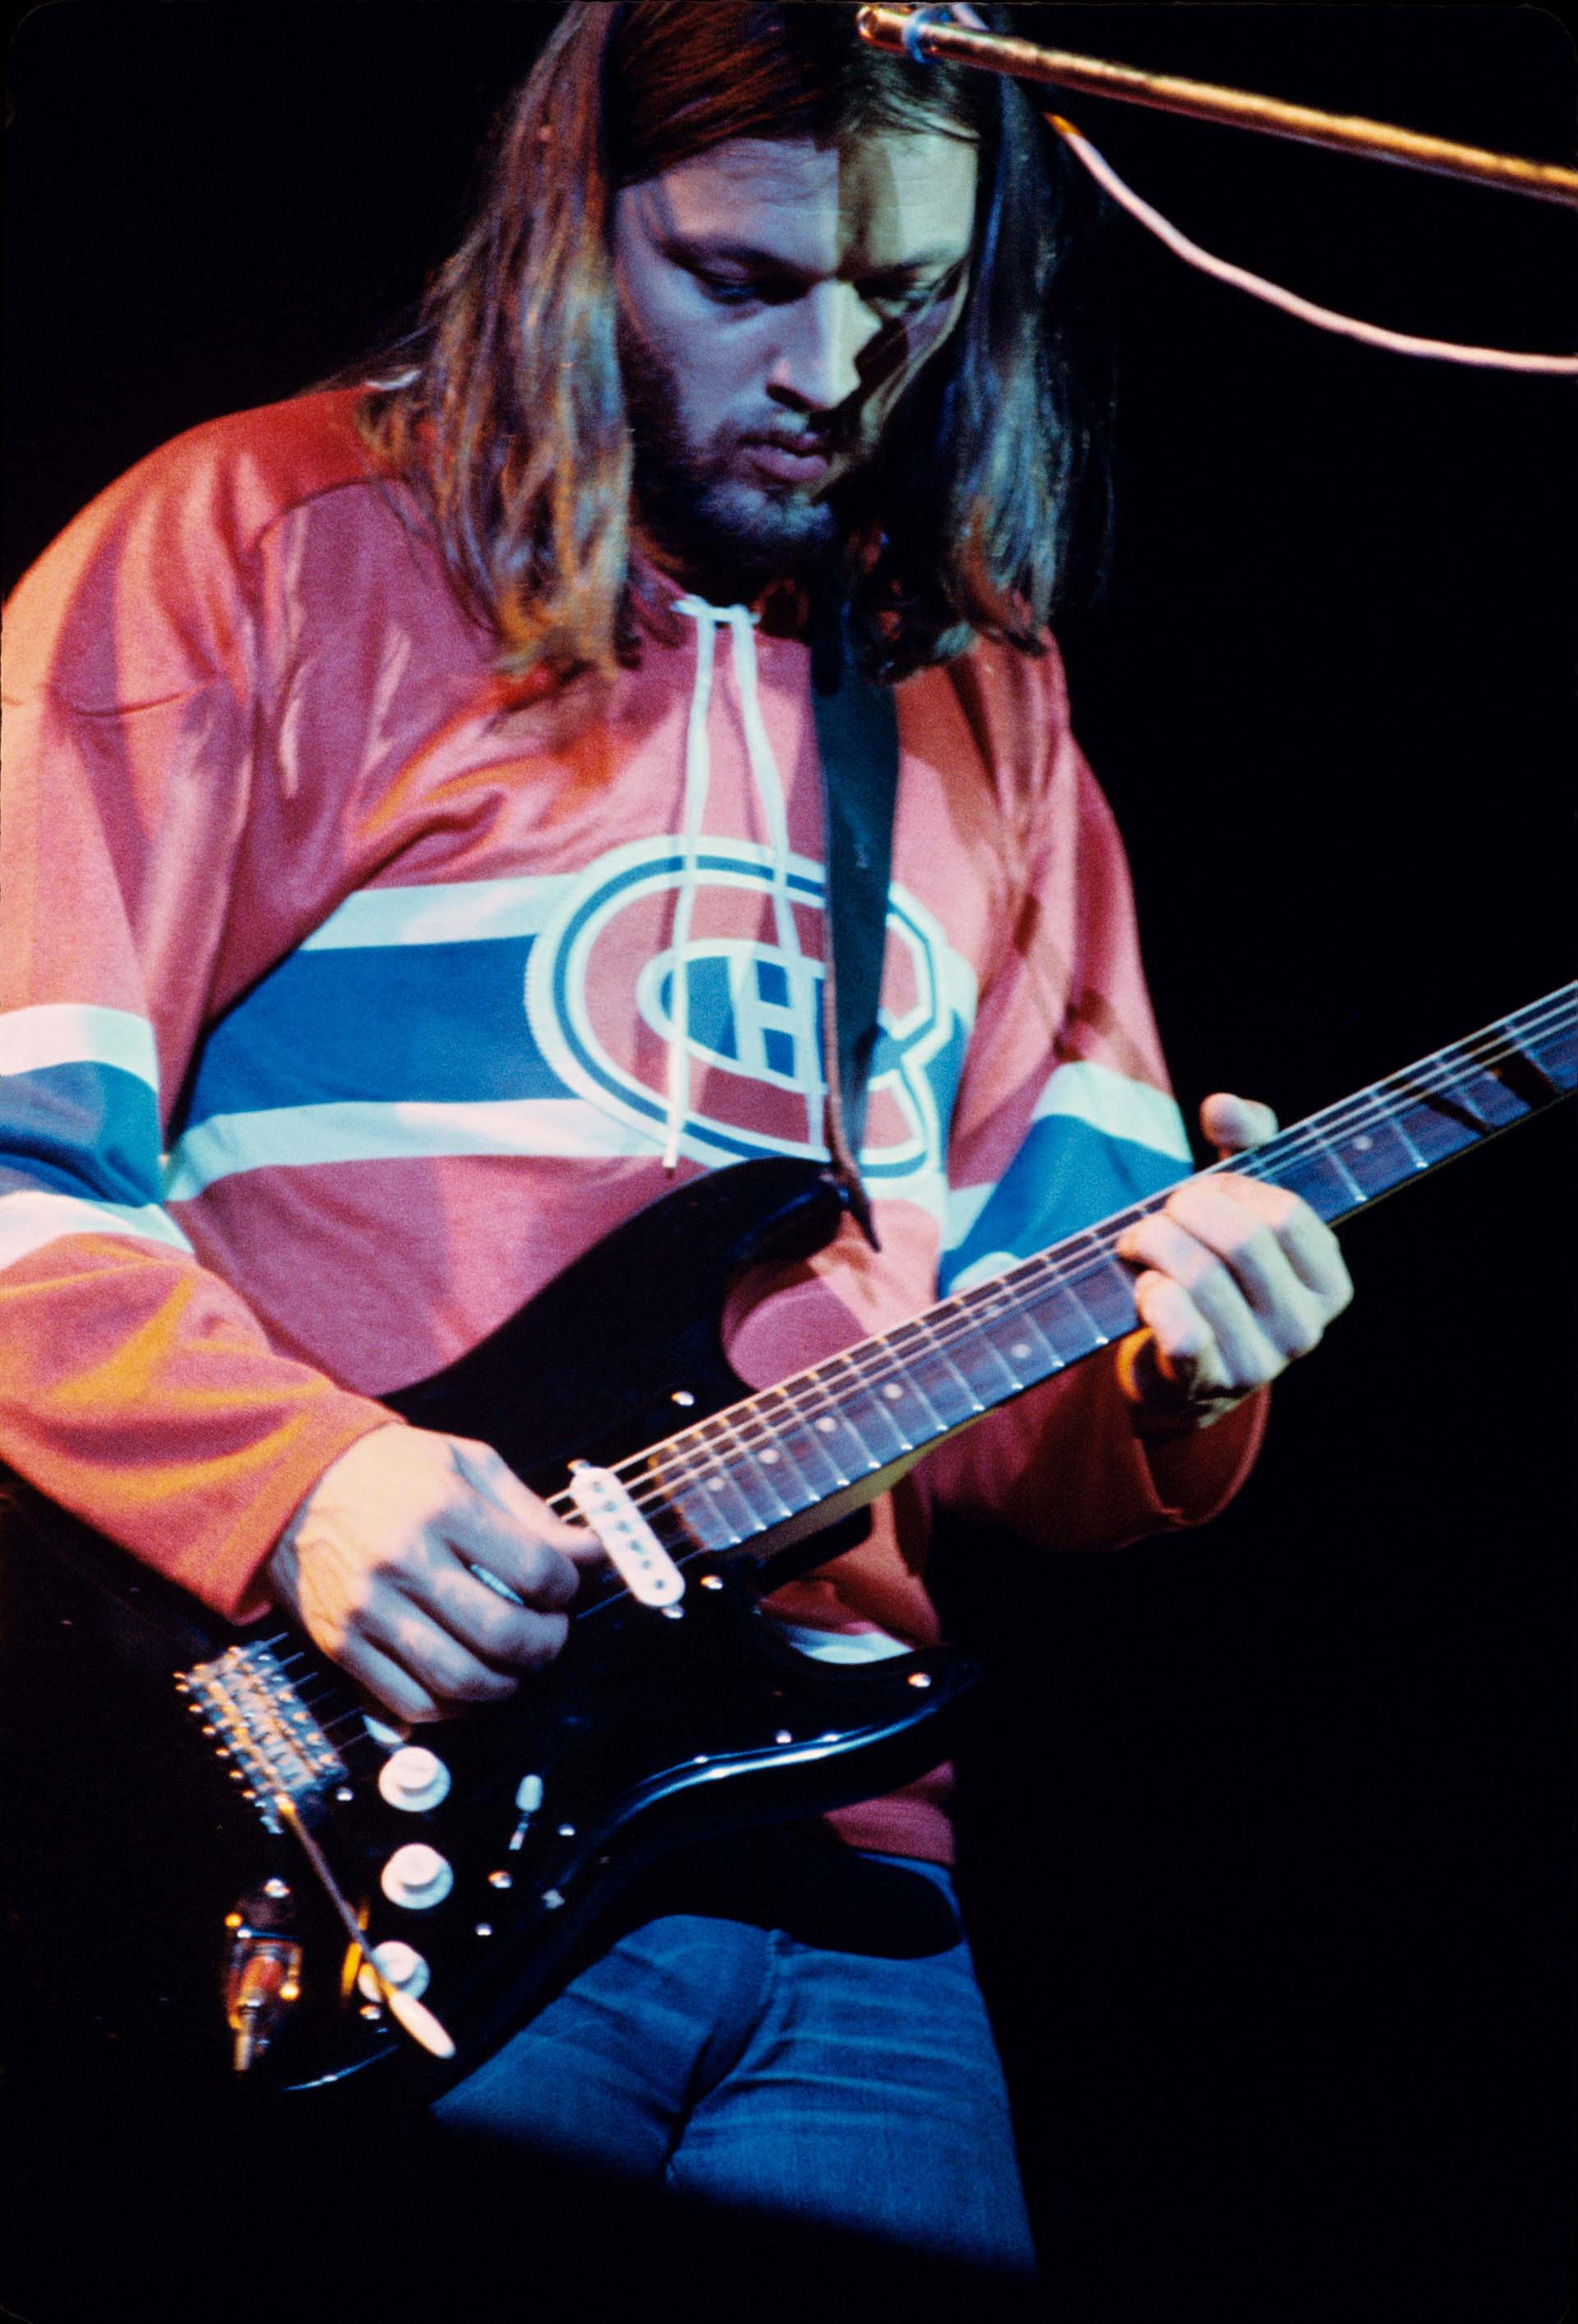 El extraordinario guitarrista David Gilmour mantuvo el nombre de Pink Floyd para salir de gira luego del alejamiento de Roger Waters (Foto: John Selby/Shutterstock)
